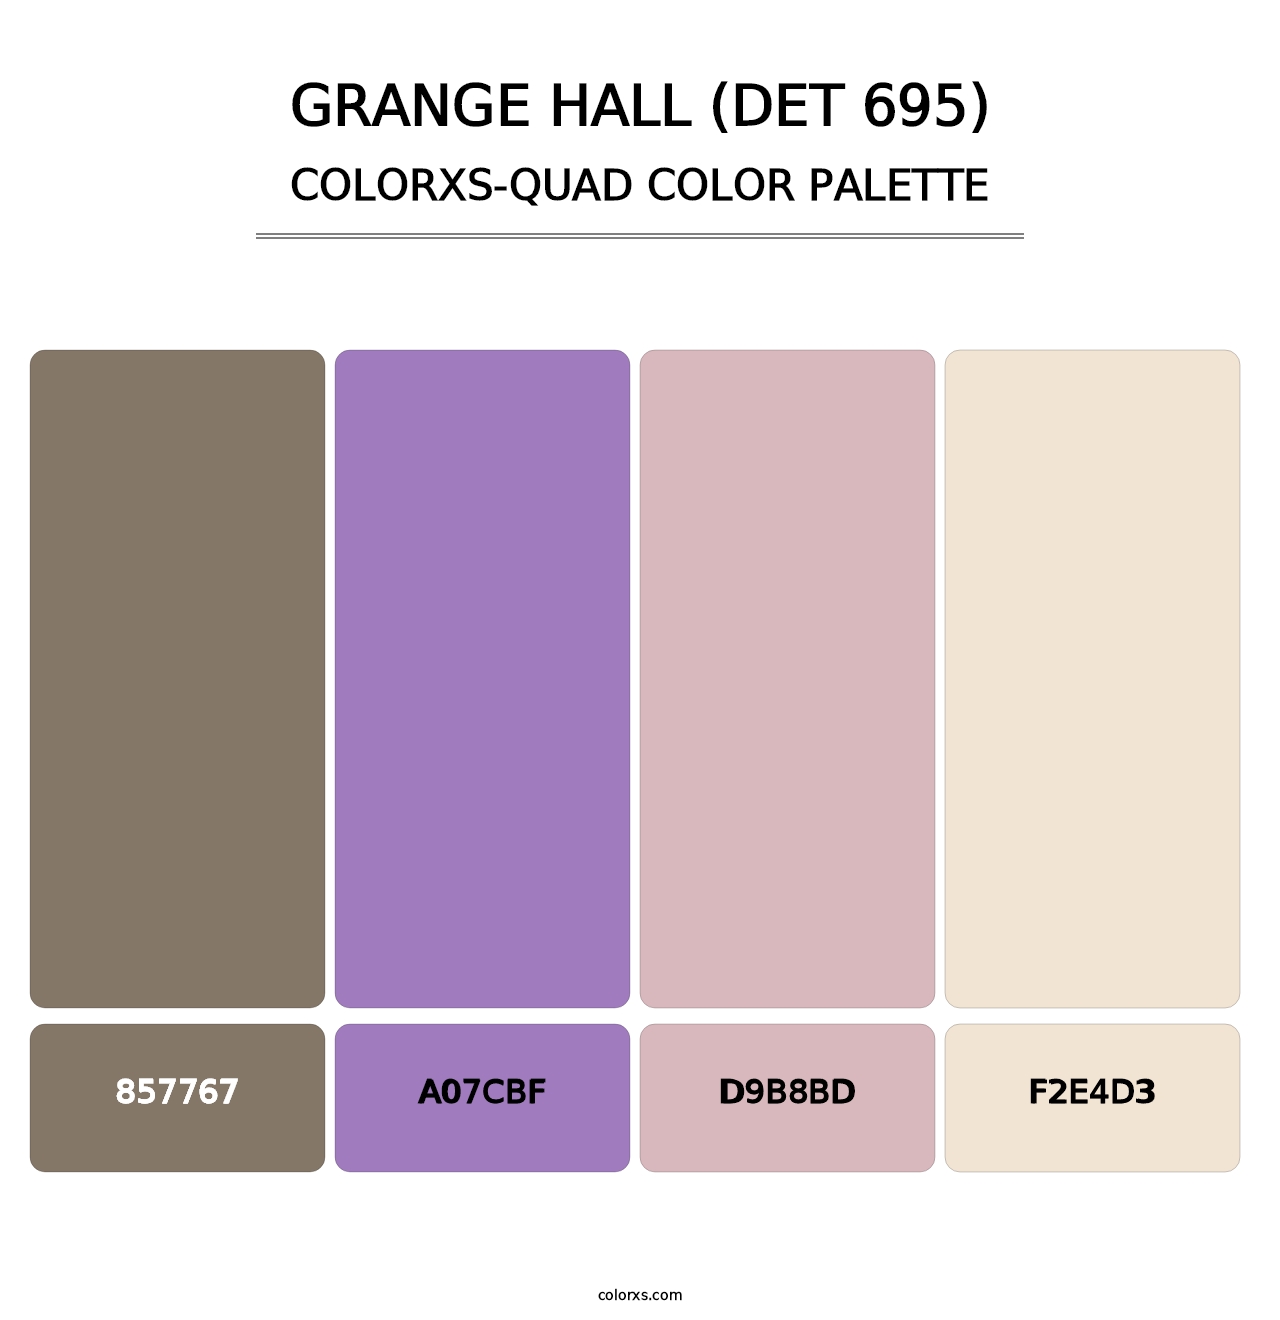 Grange Hall (DET 695) - Colorxs Quad Palette